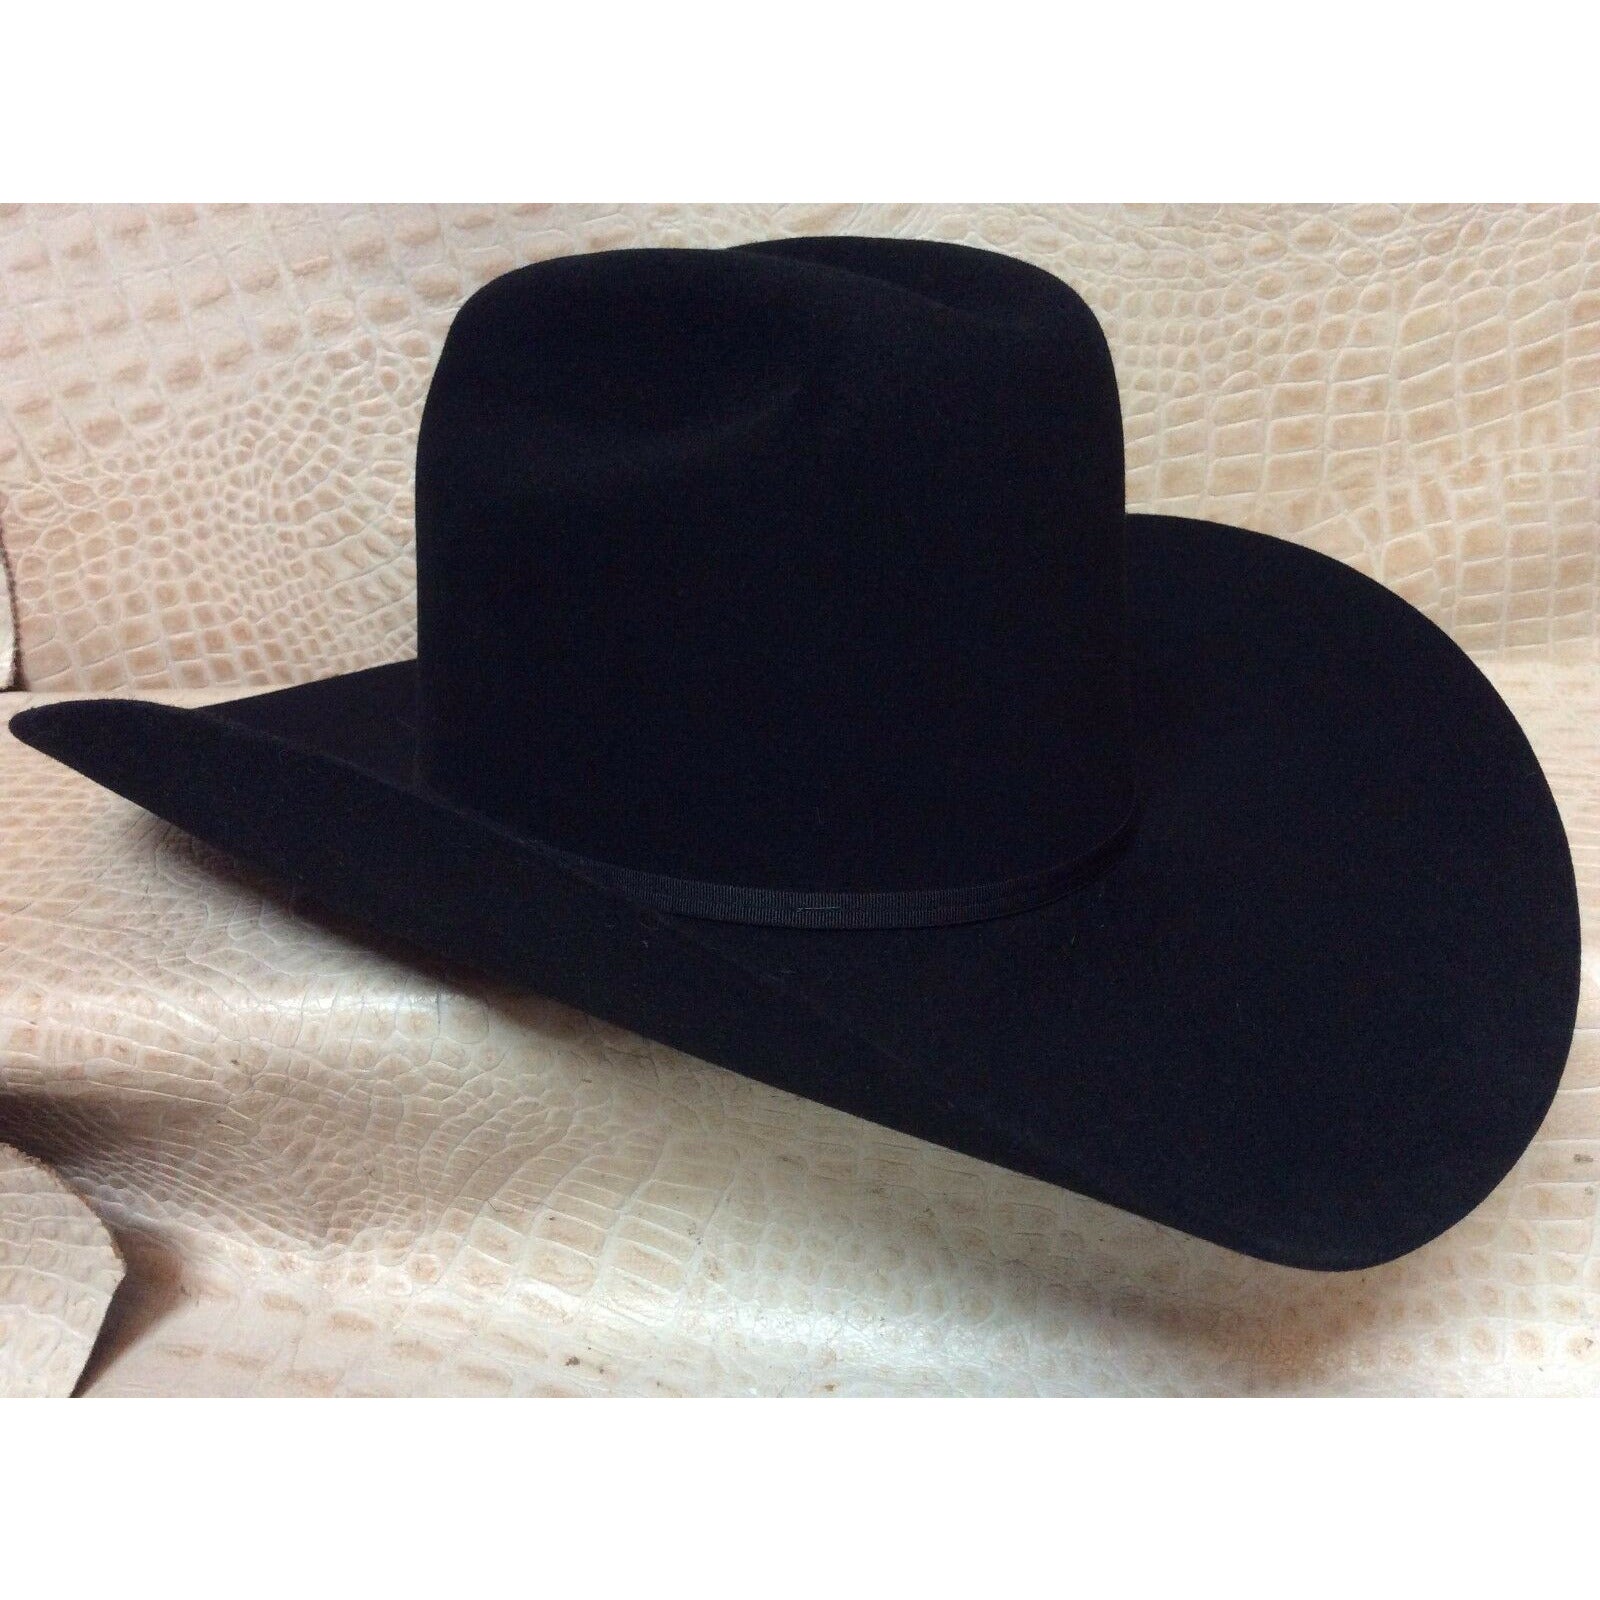 Stetson Rancher Black 6X Beaver Fur Felt Western Cowboy Hat – CWesternwear